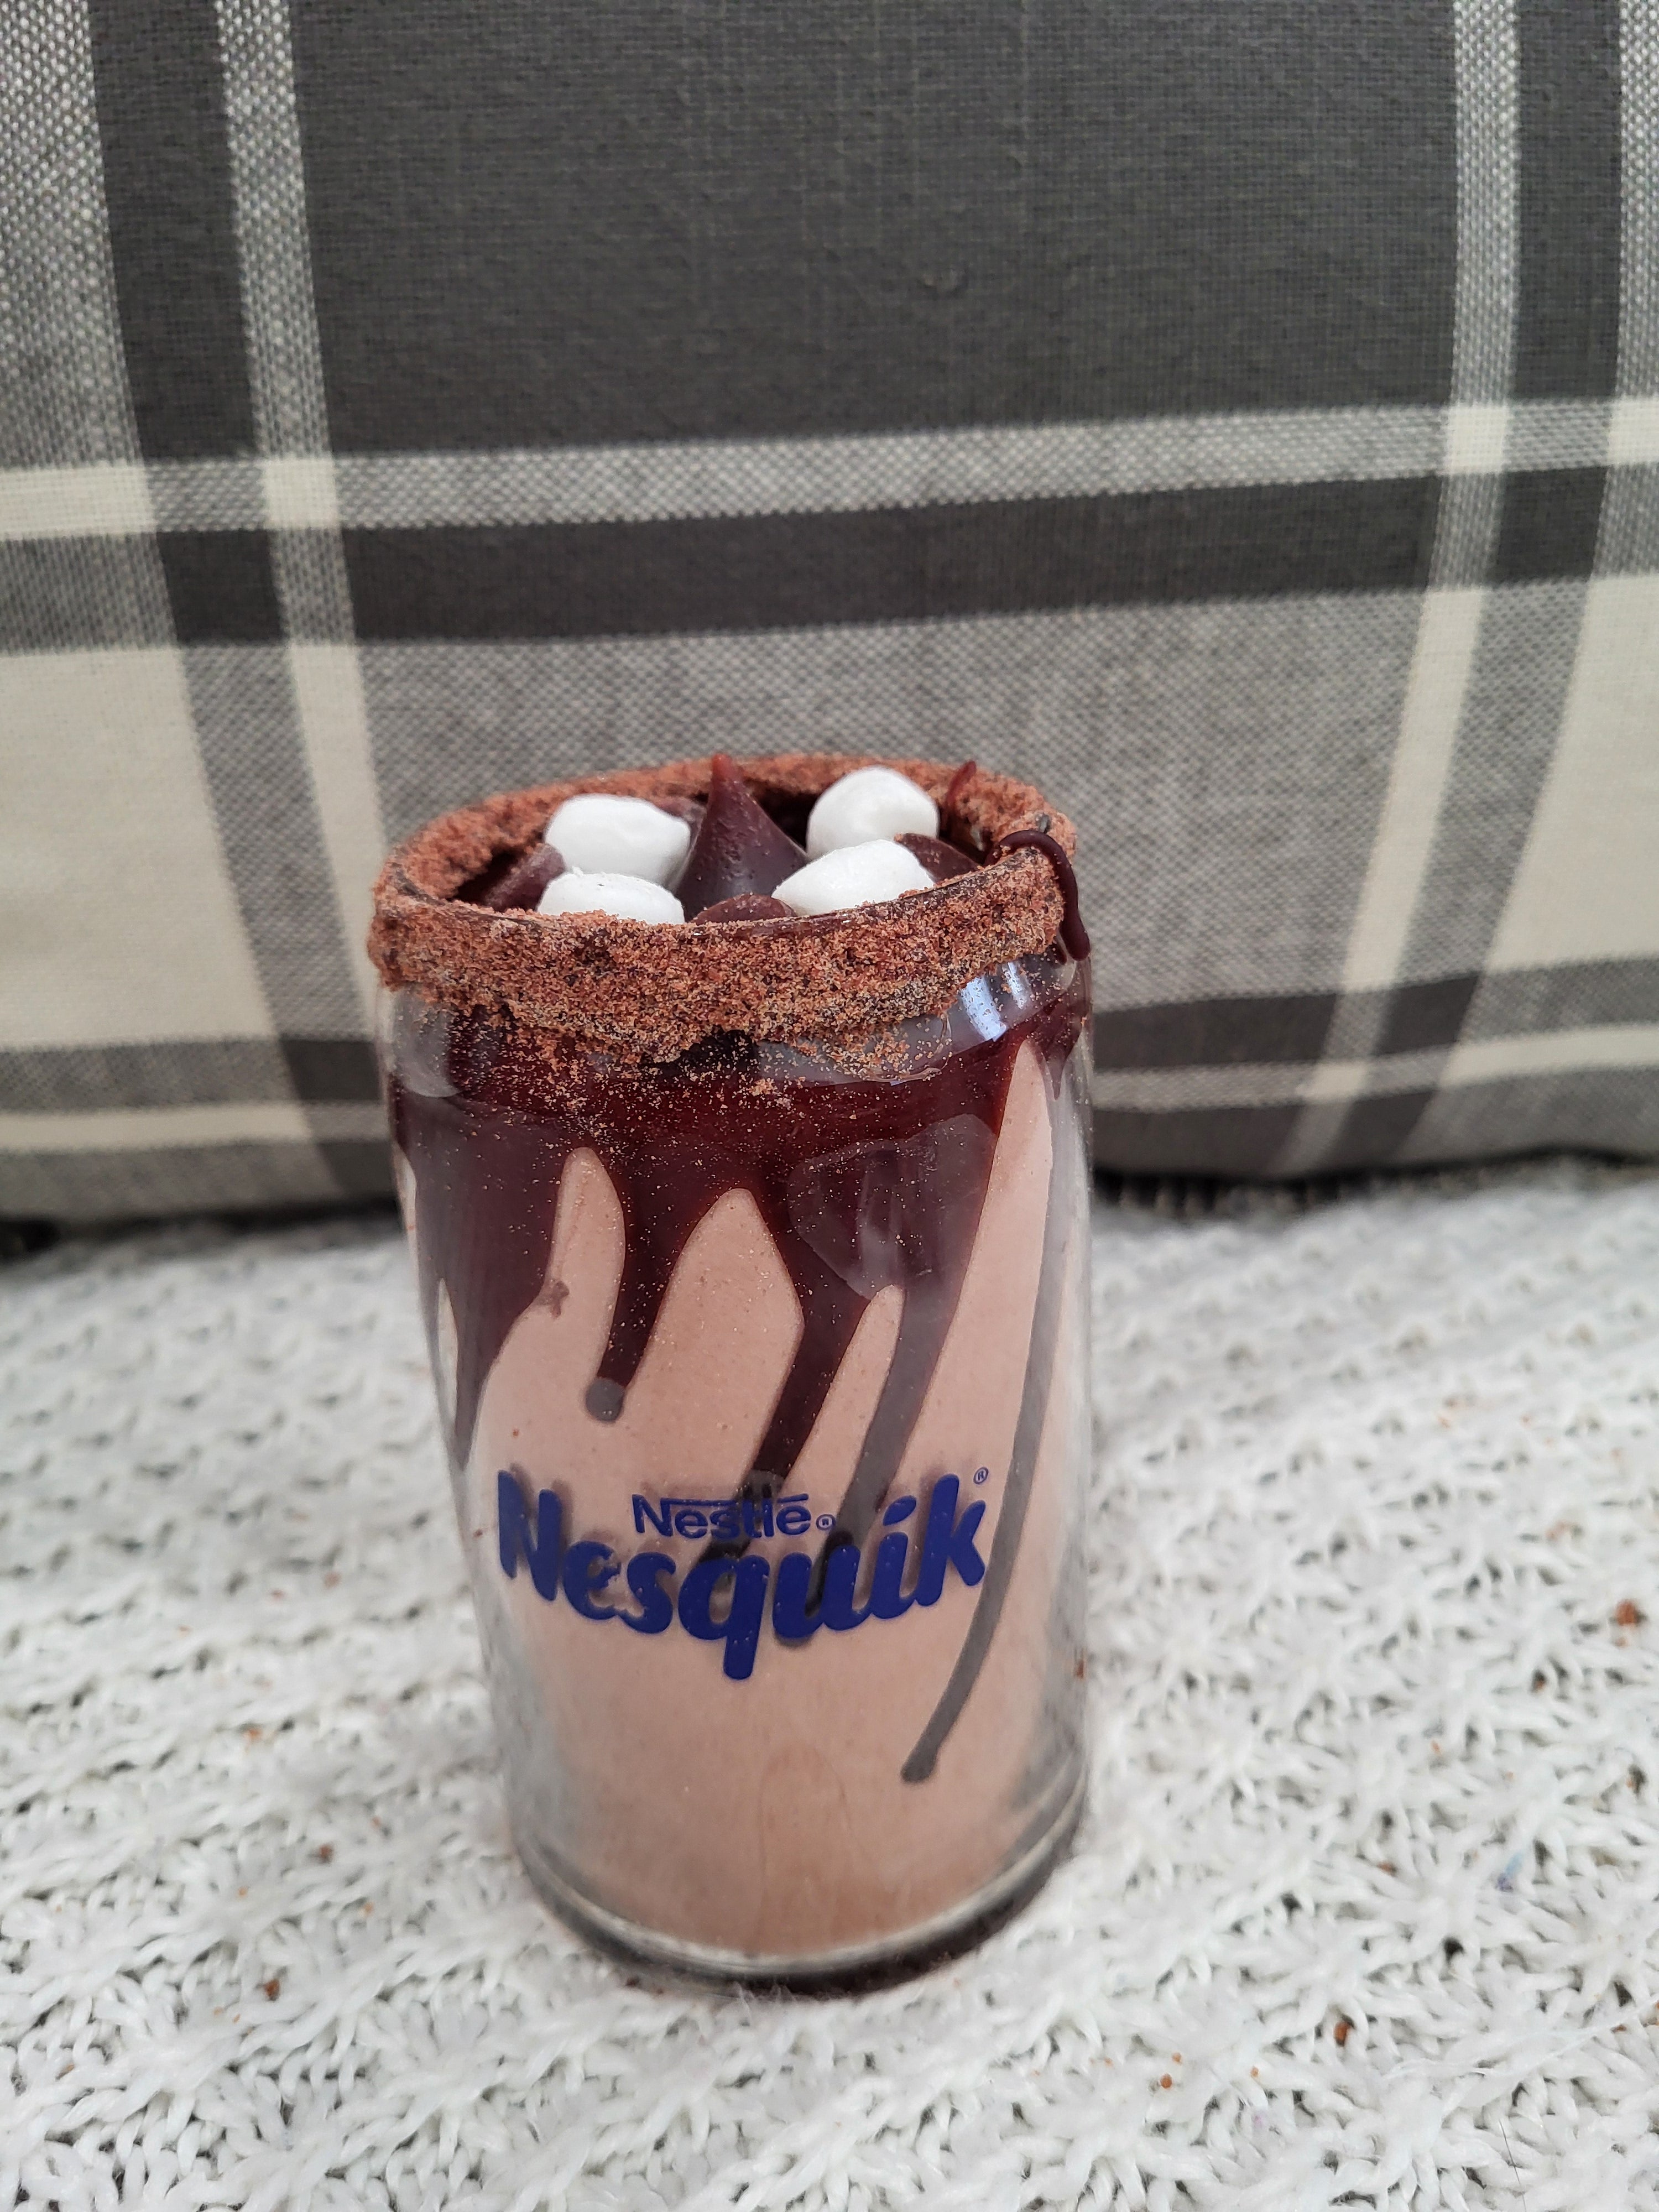 Nesquik® Hot Chocolate